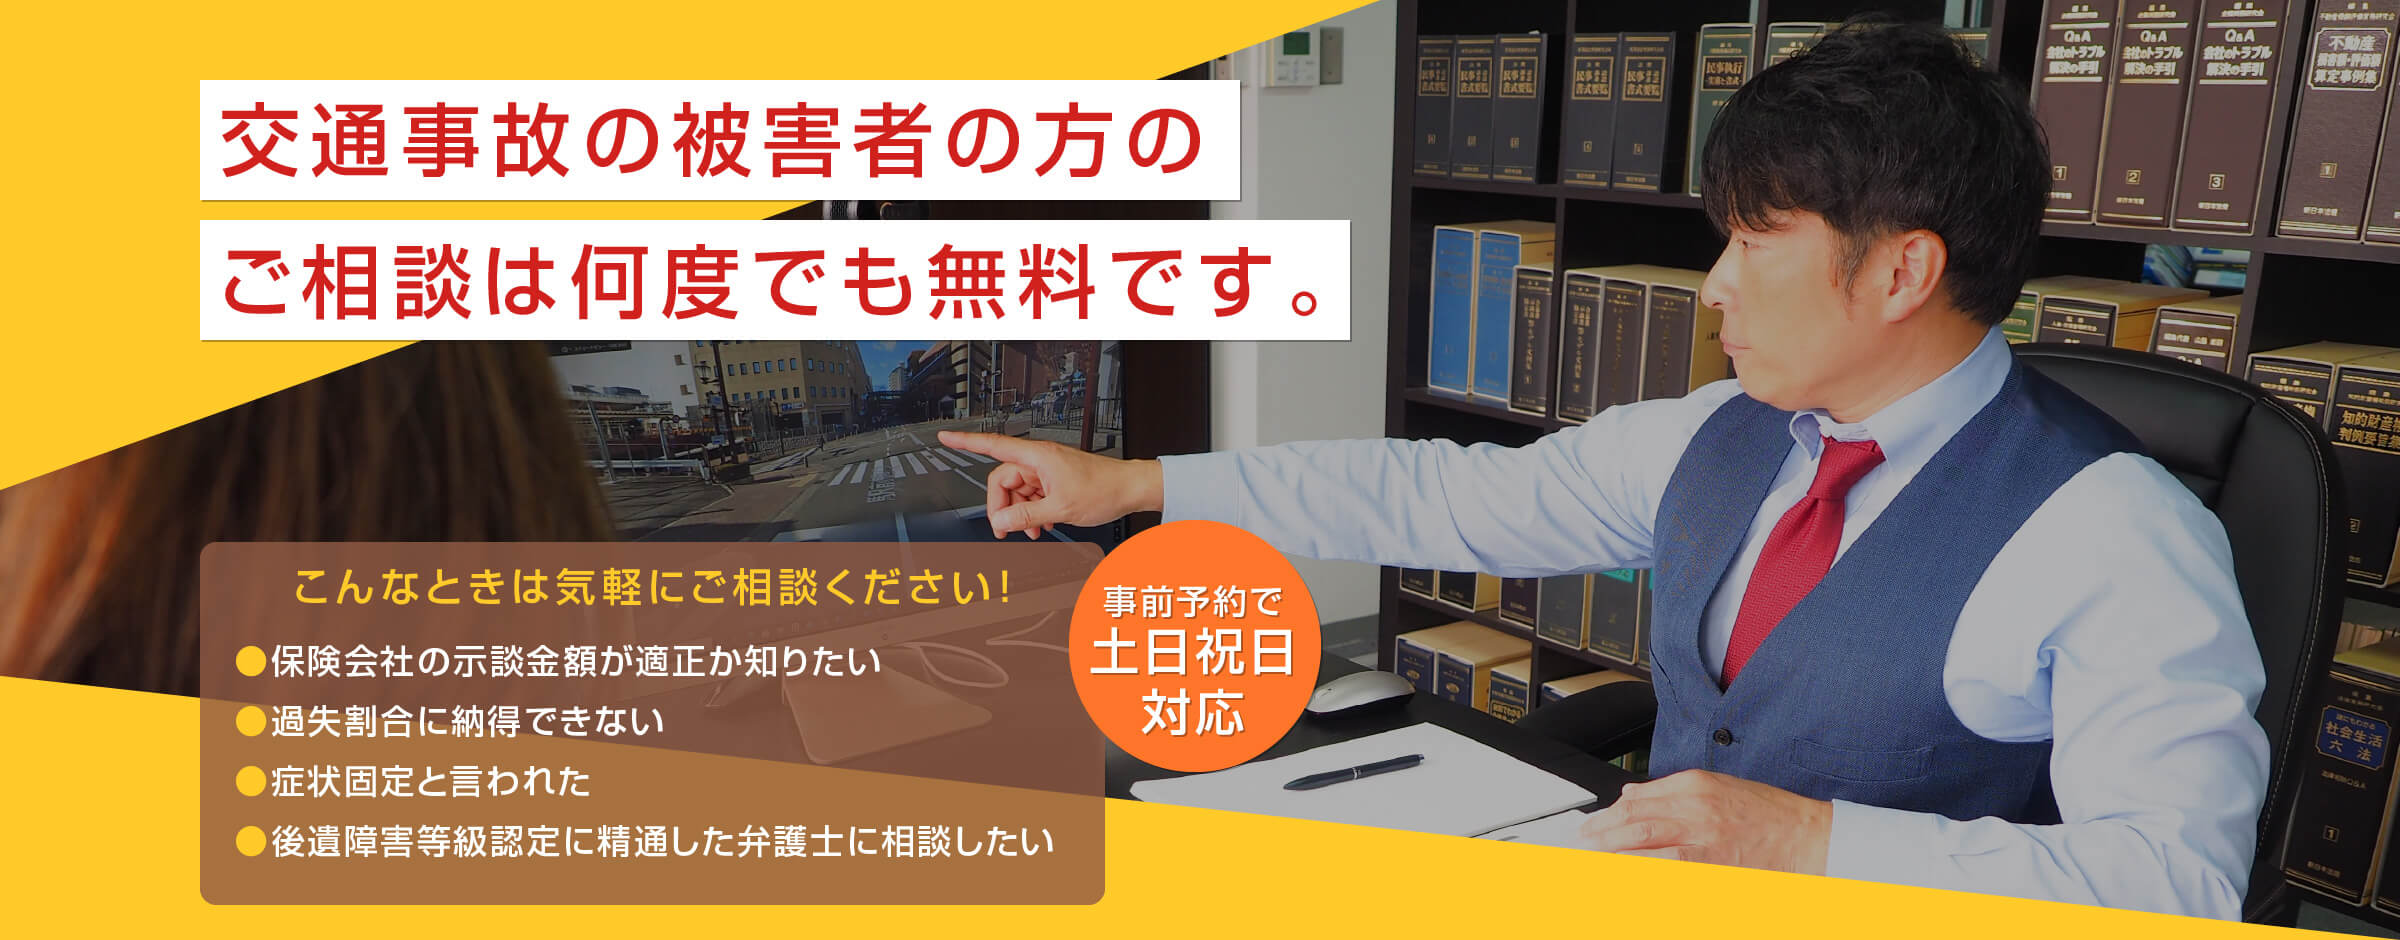 兵庫県神戸市で交通事故に力を入れている弁護士をお探しなら澤上・古谷総合法律事務所